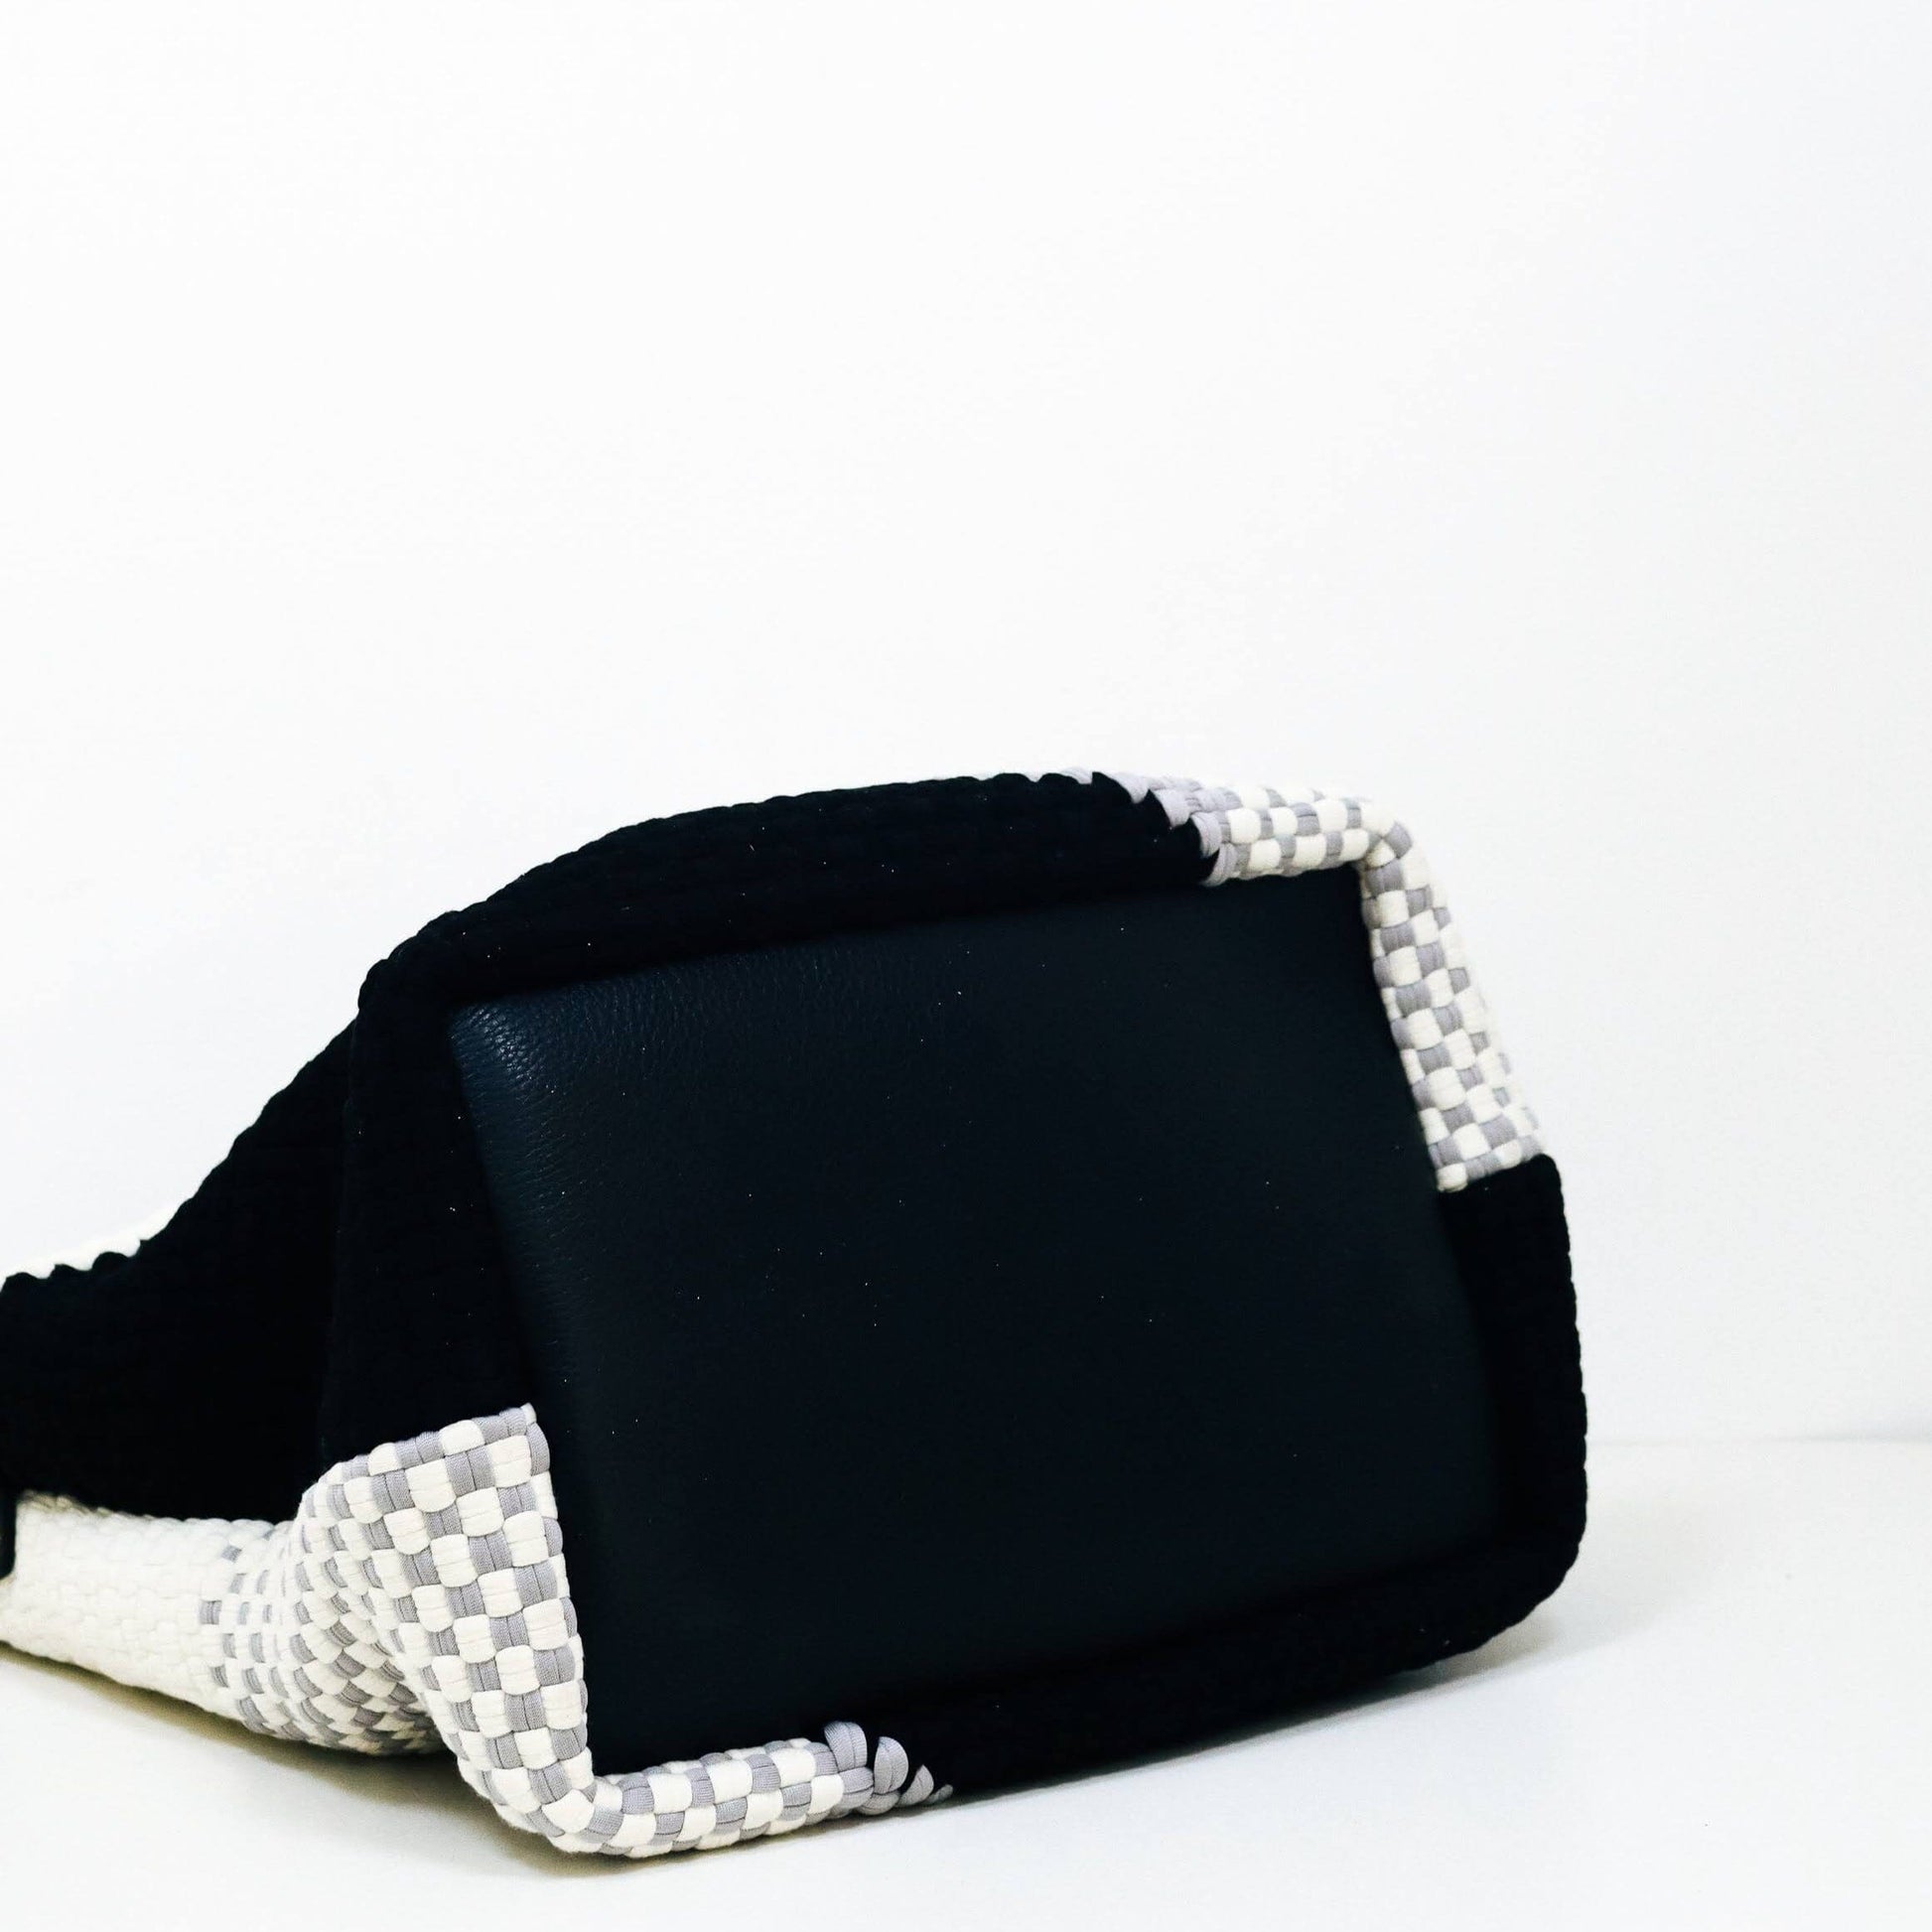 Buslo Diagonal Weave - Black & Gray Fashion Rags2Riches